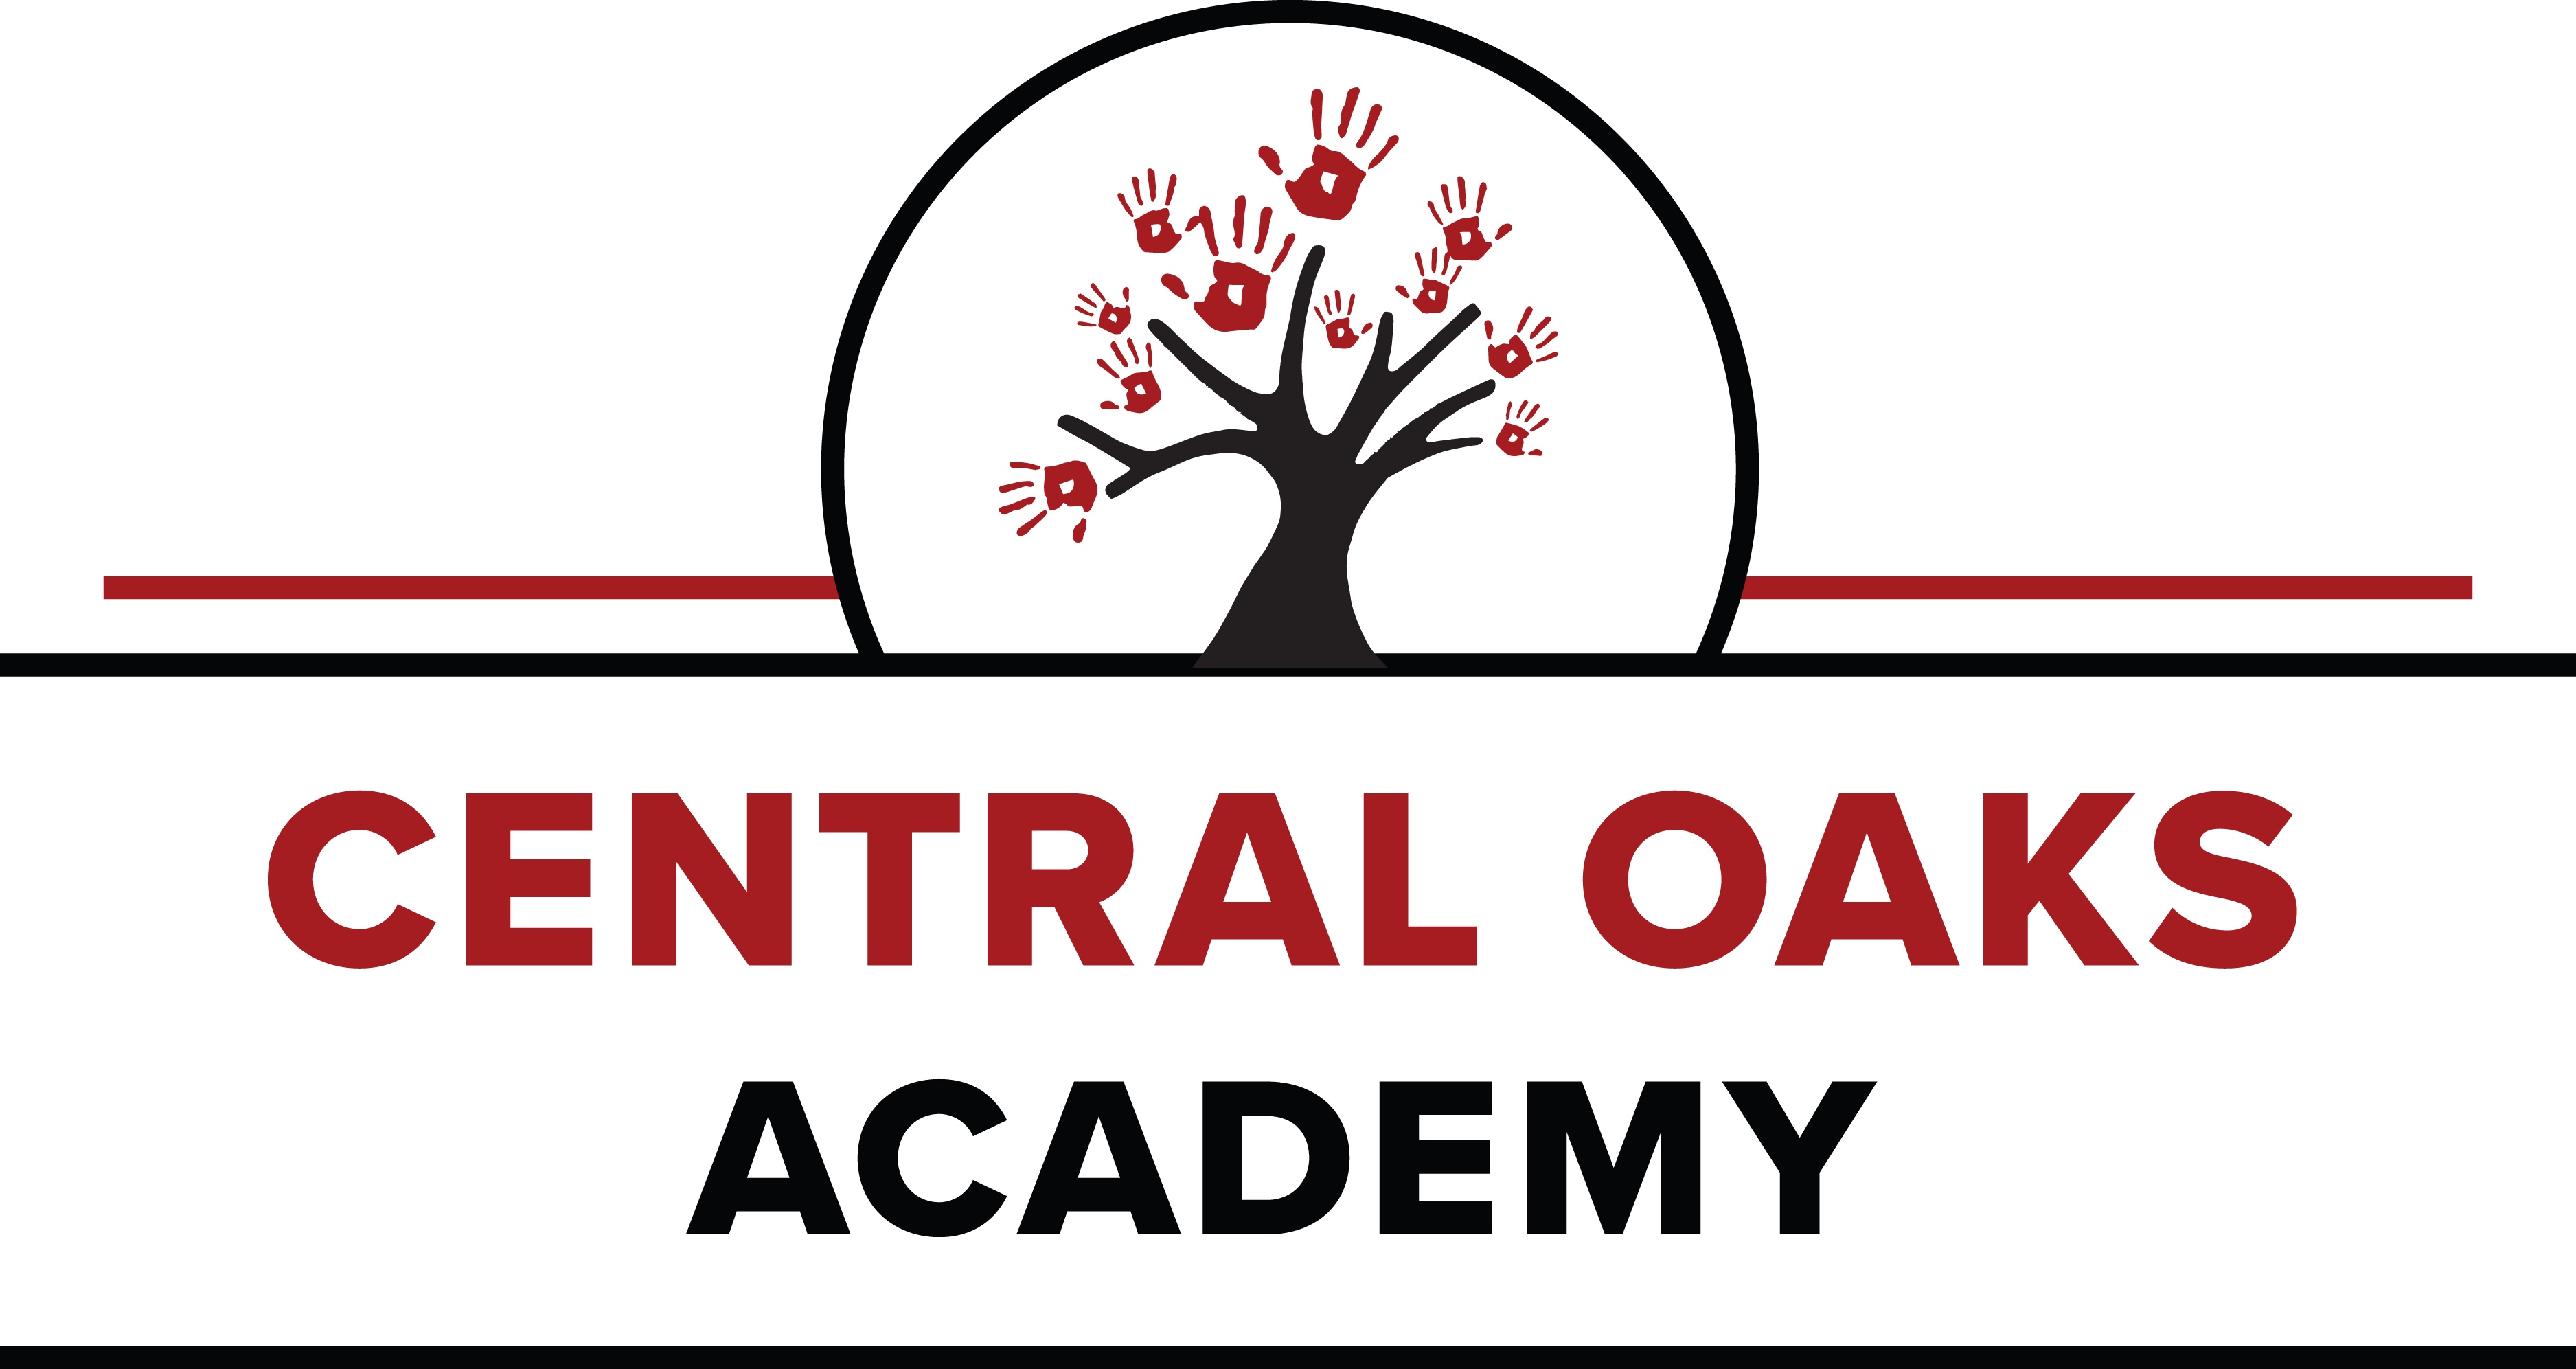 Central Oaks Academy